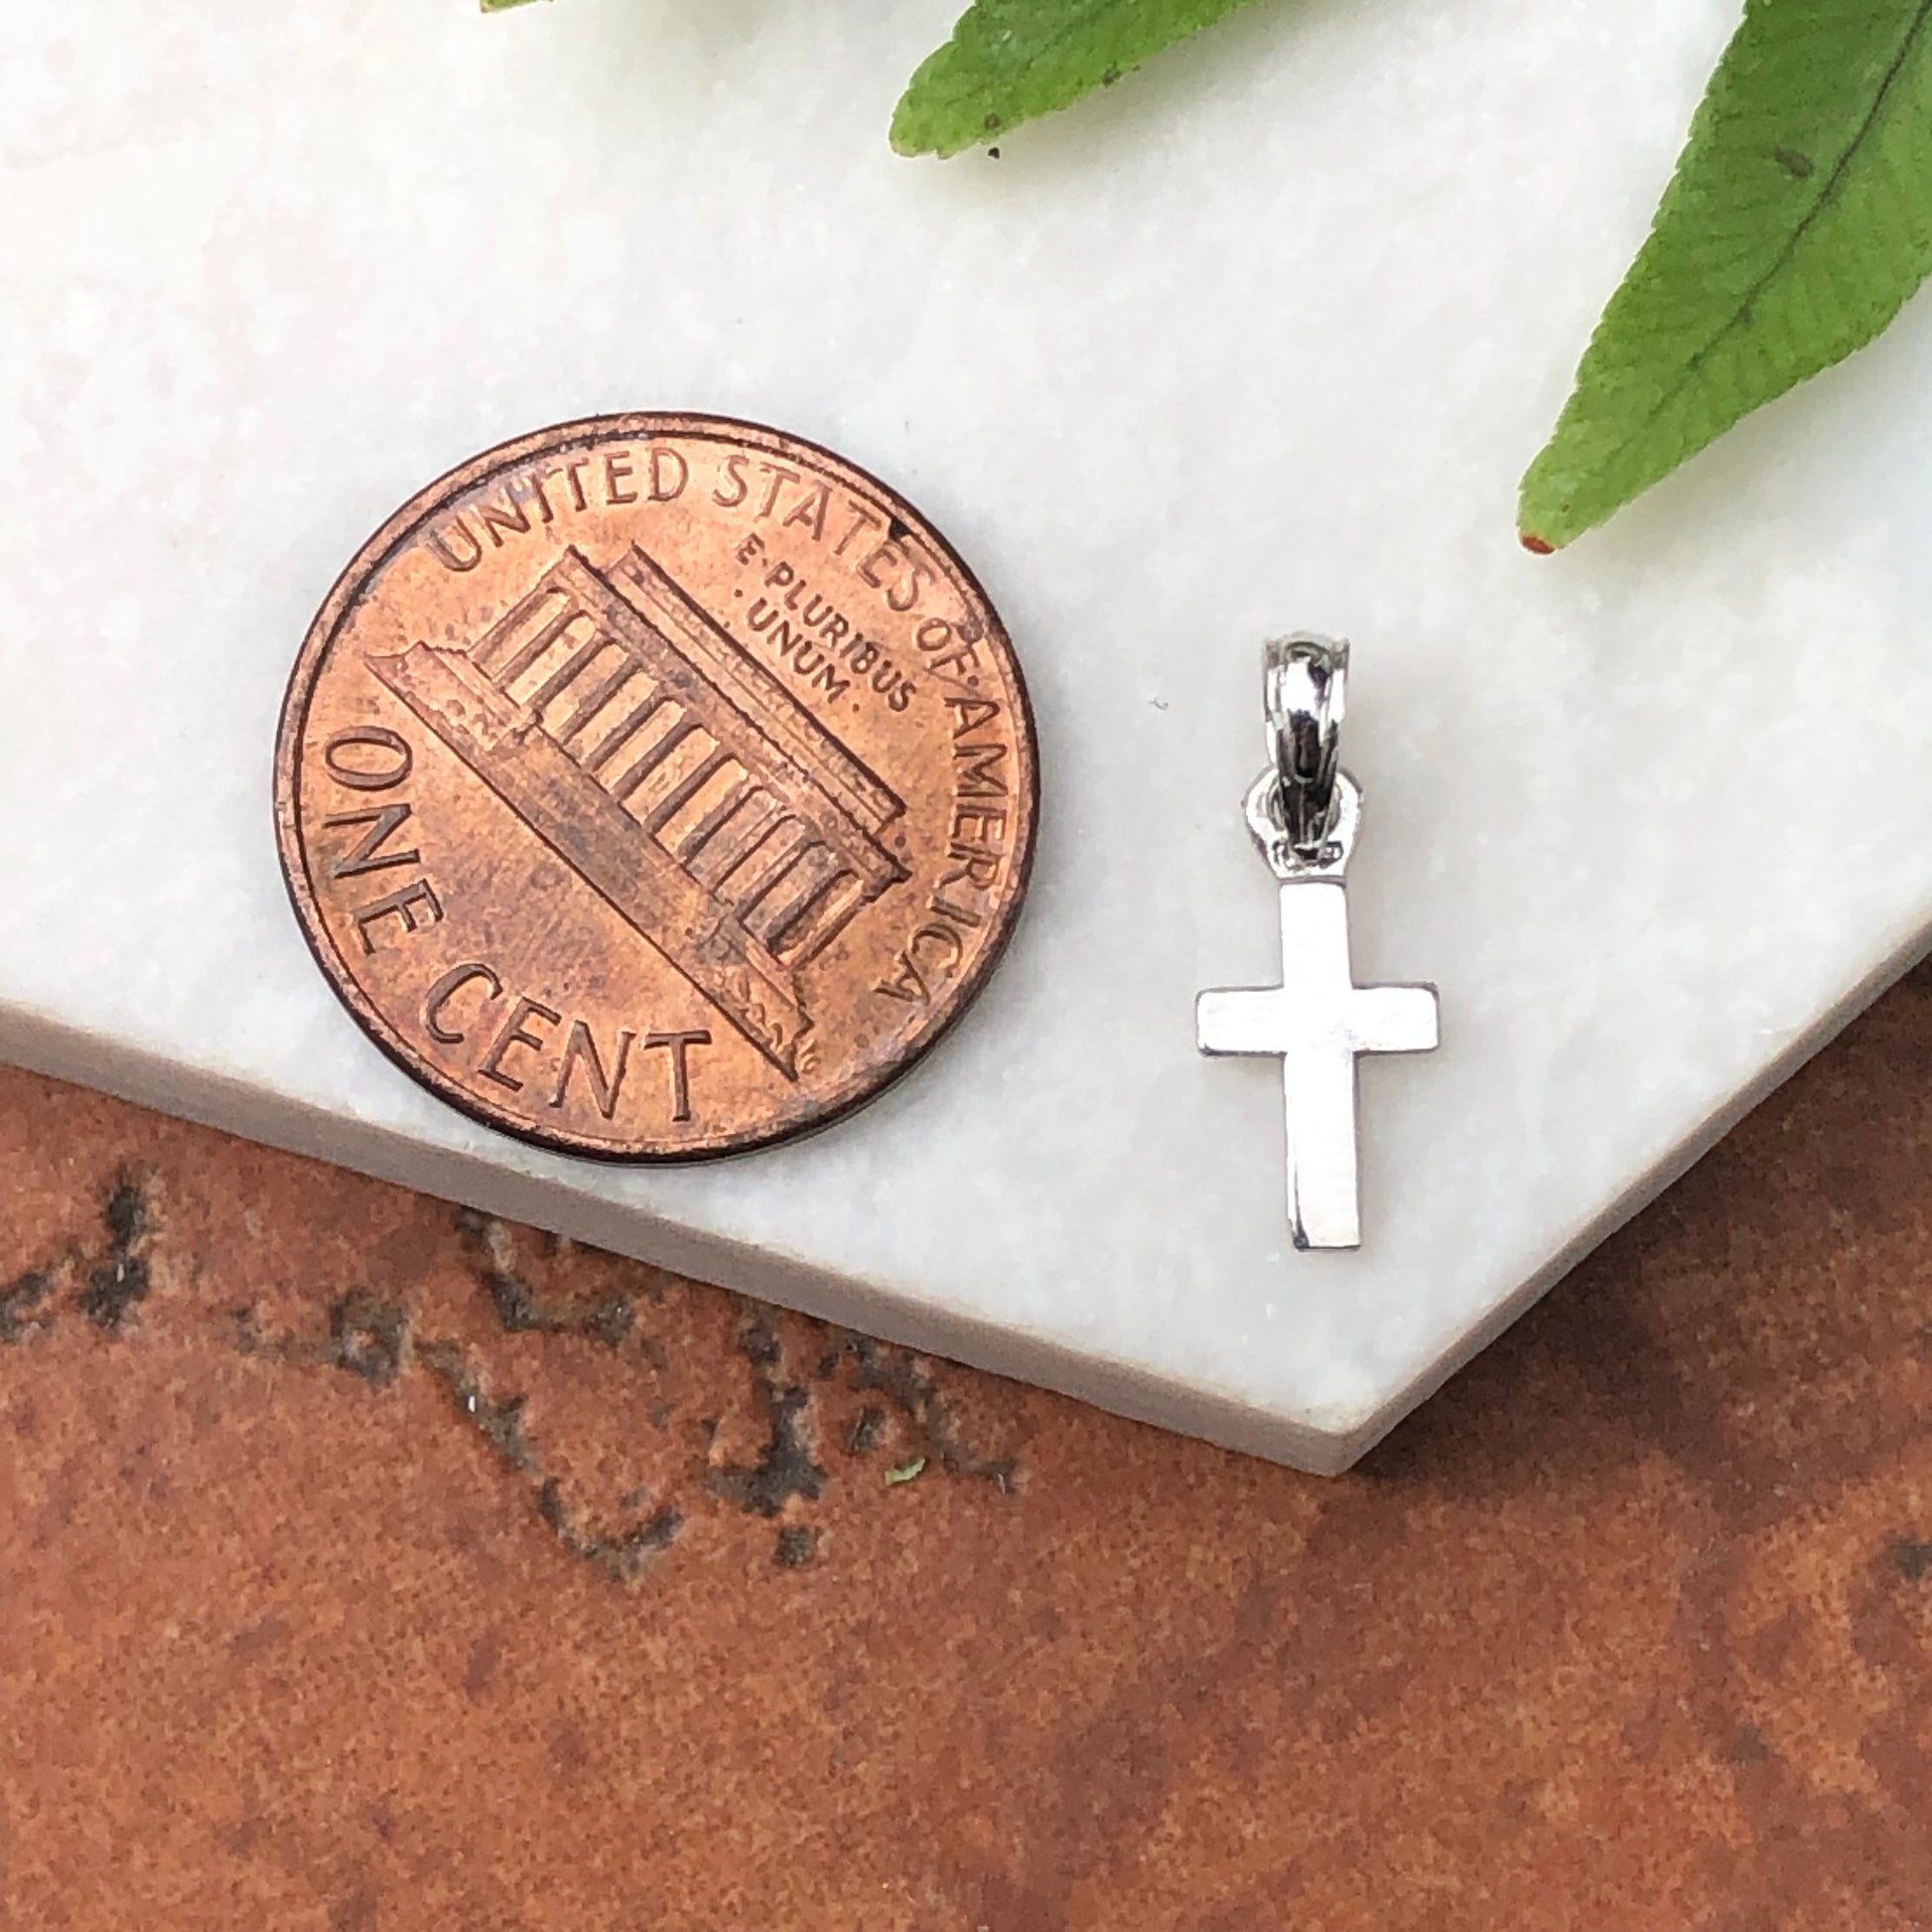 10KT White Gold Mini Cross Pendant Charm, 10KT White Gold Mini Cross Pendant Charm - Legacy Saint Jewelry